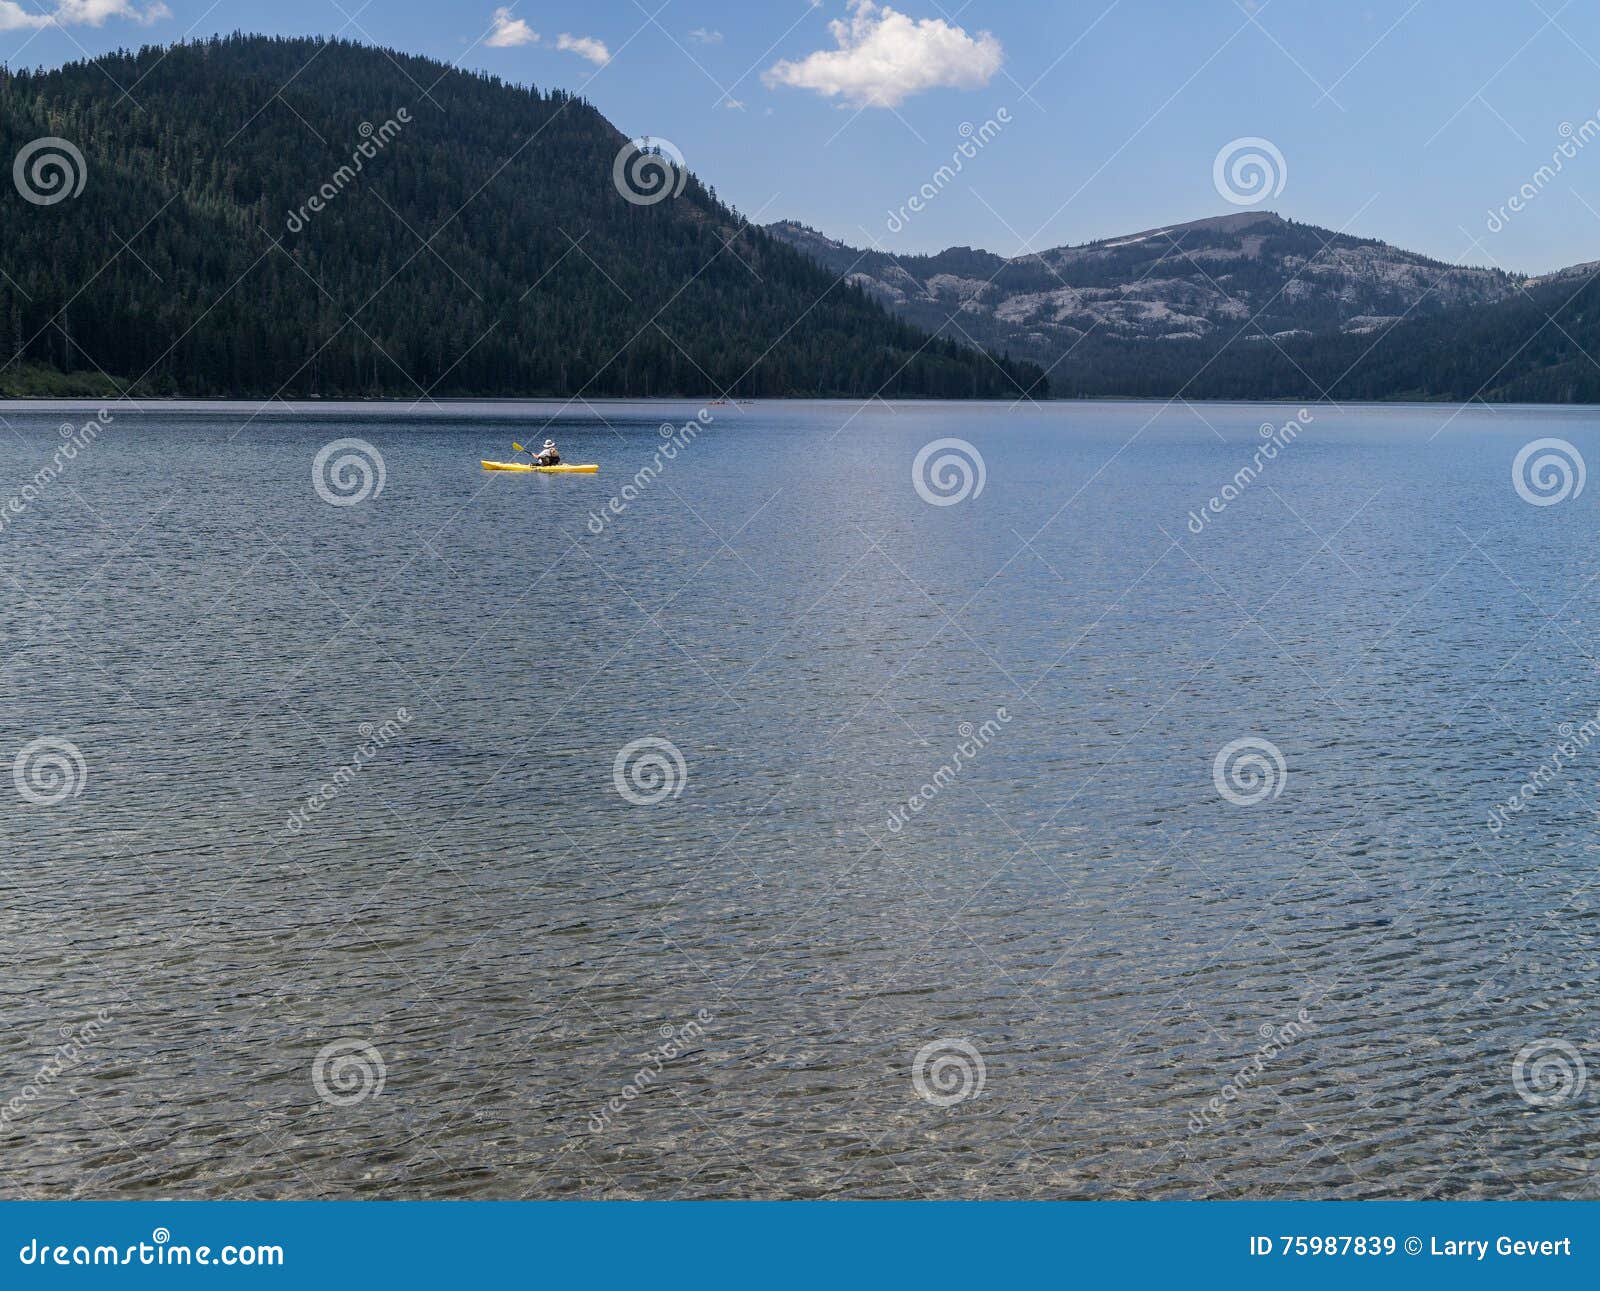 Independence Lake Kayaking Sierra Nevada Range 75987839 